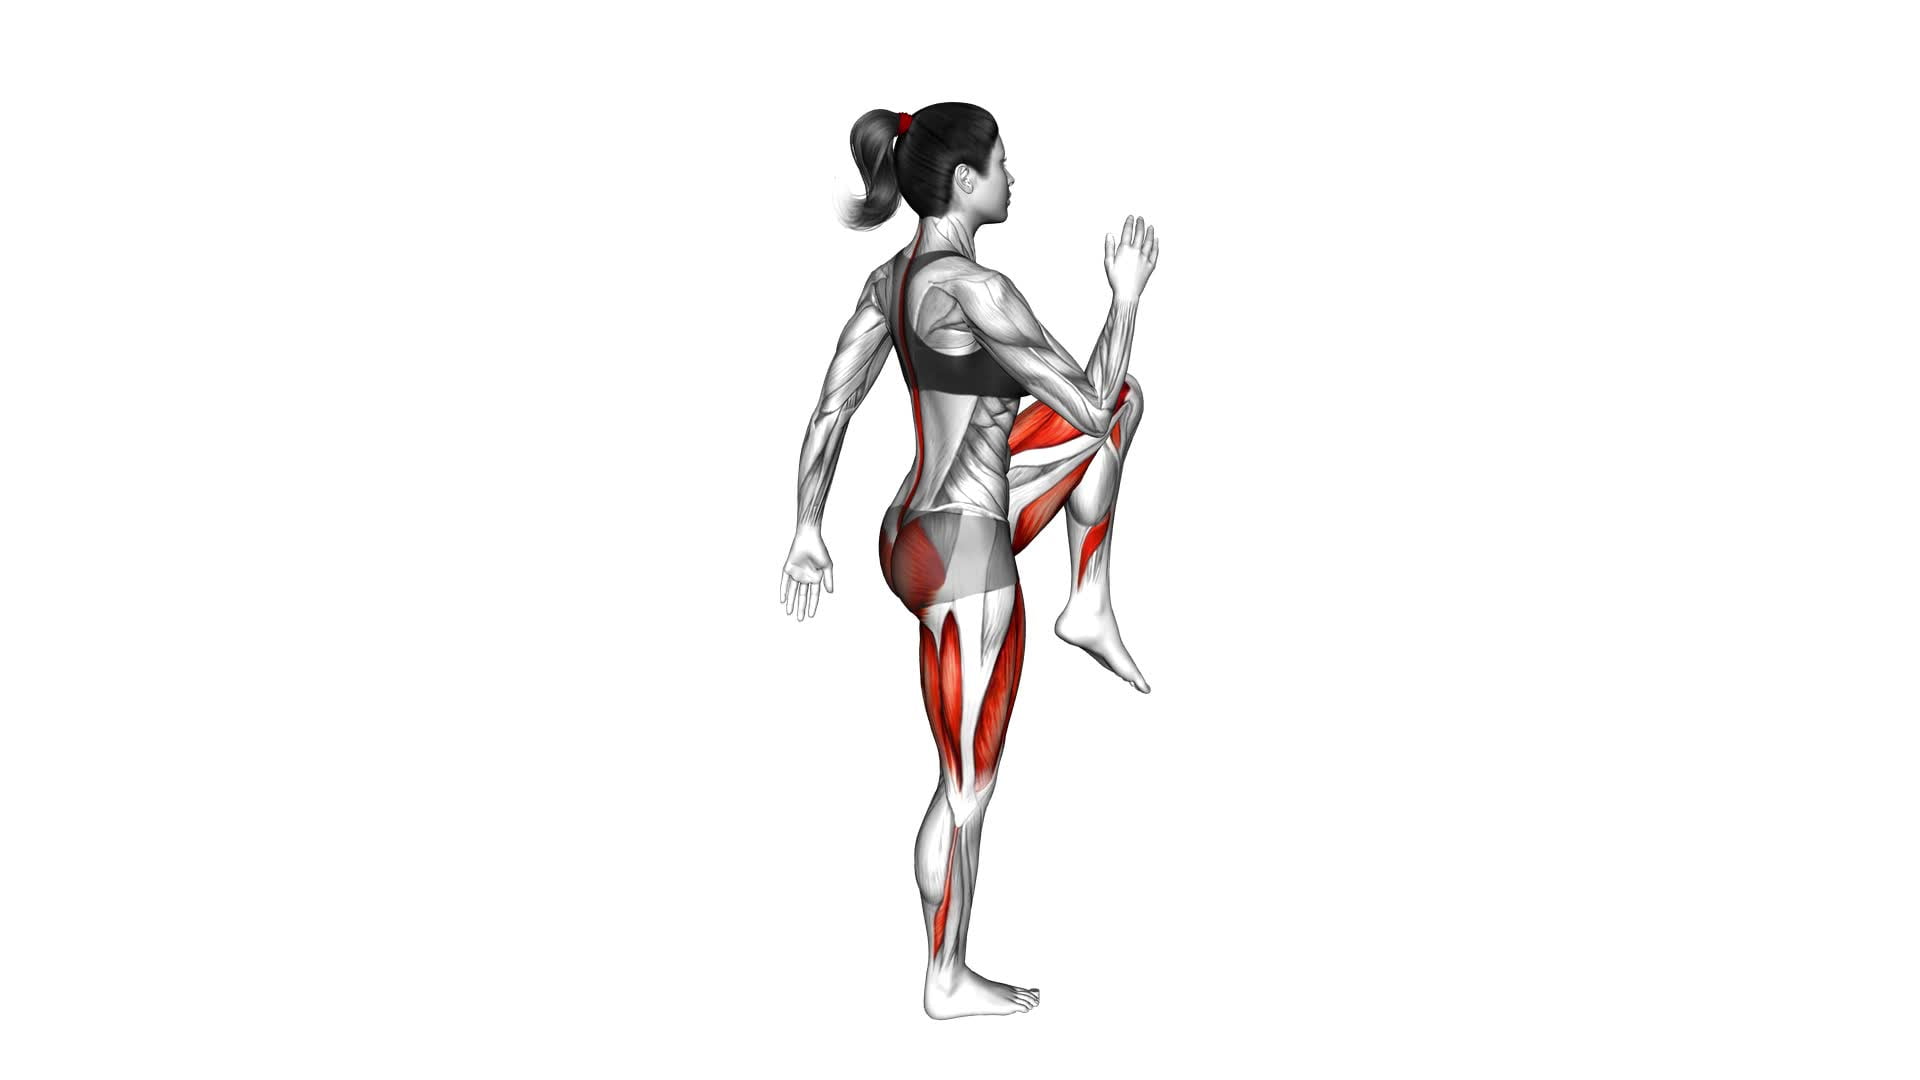 Single Leg Deadlift With Knee Lift (Female) - Video Exercise Guide & Tips